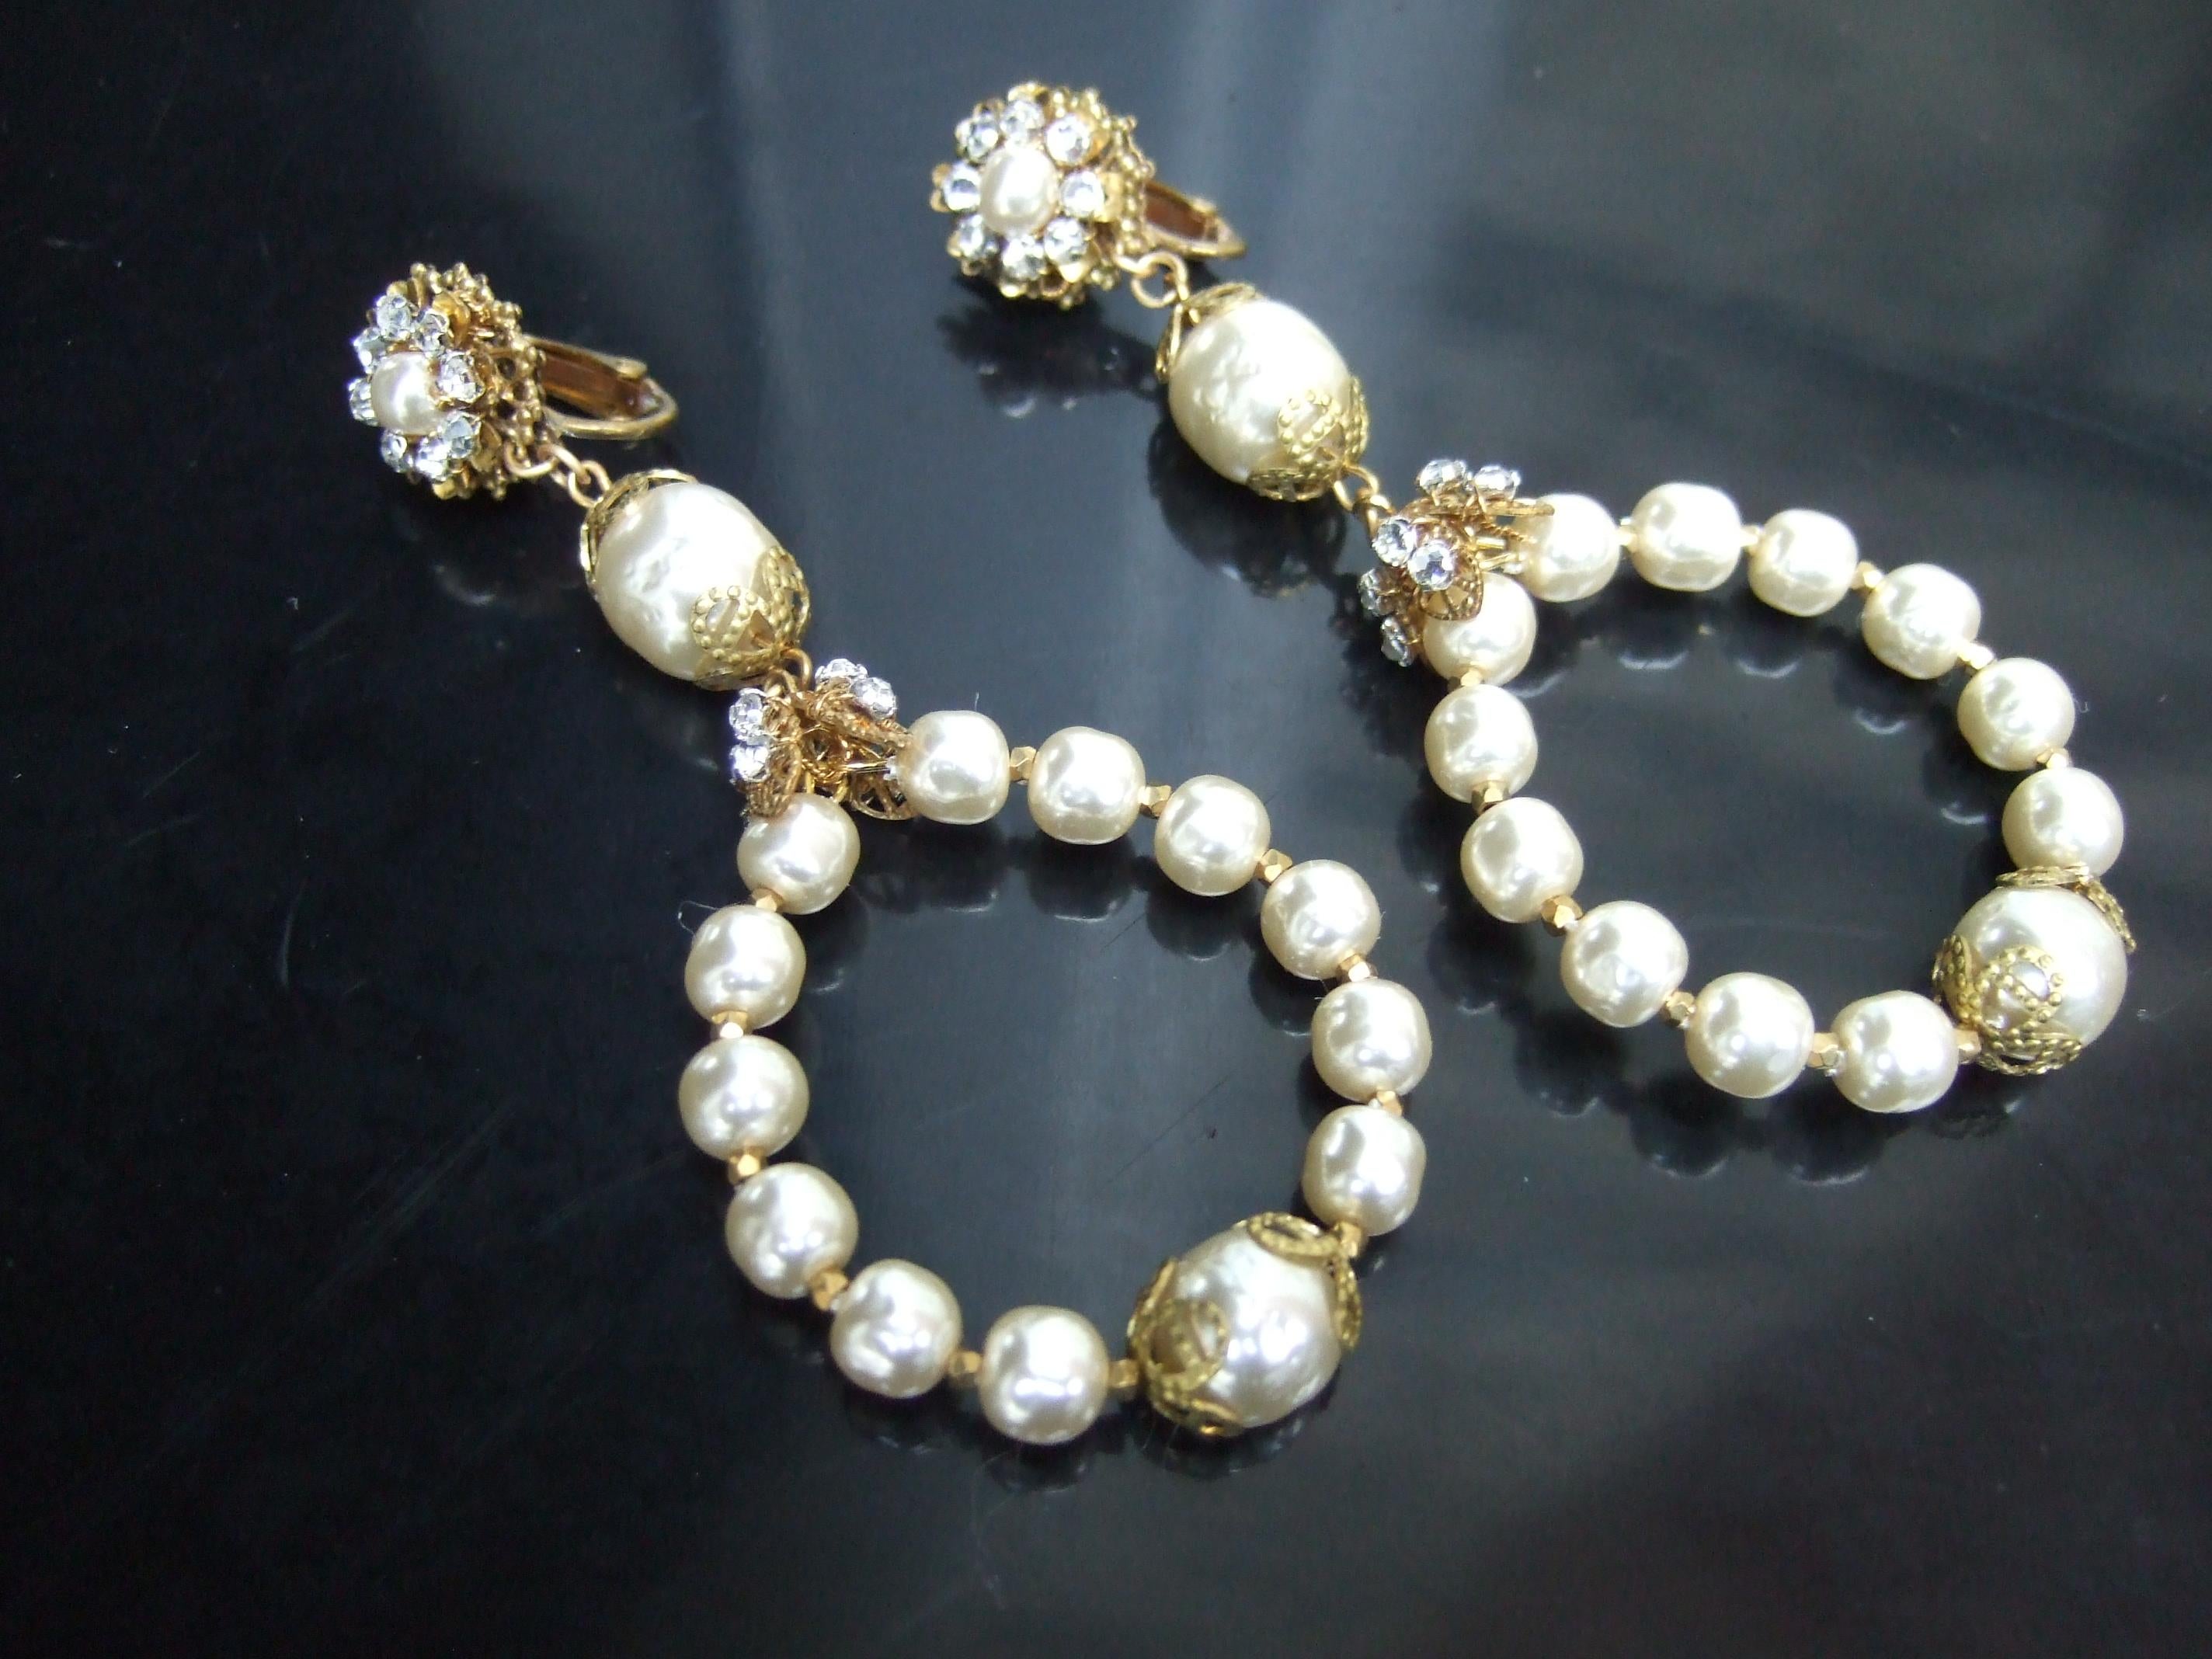 Miriam Haskell Dramatische Glas-Emaille Perle baumeln Reifen Clip-on Ohrringe c 1960s
Die eleganten Ohrringe bestehen aus einem runden, ovalen Ring, der mit einem Band aus Haskells charakteristischen Glasemail-Perlen verziert ist

Der obere Teil ist